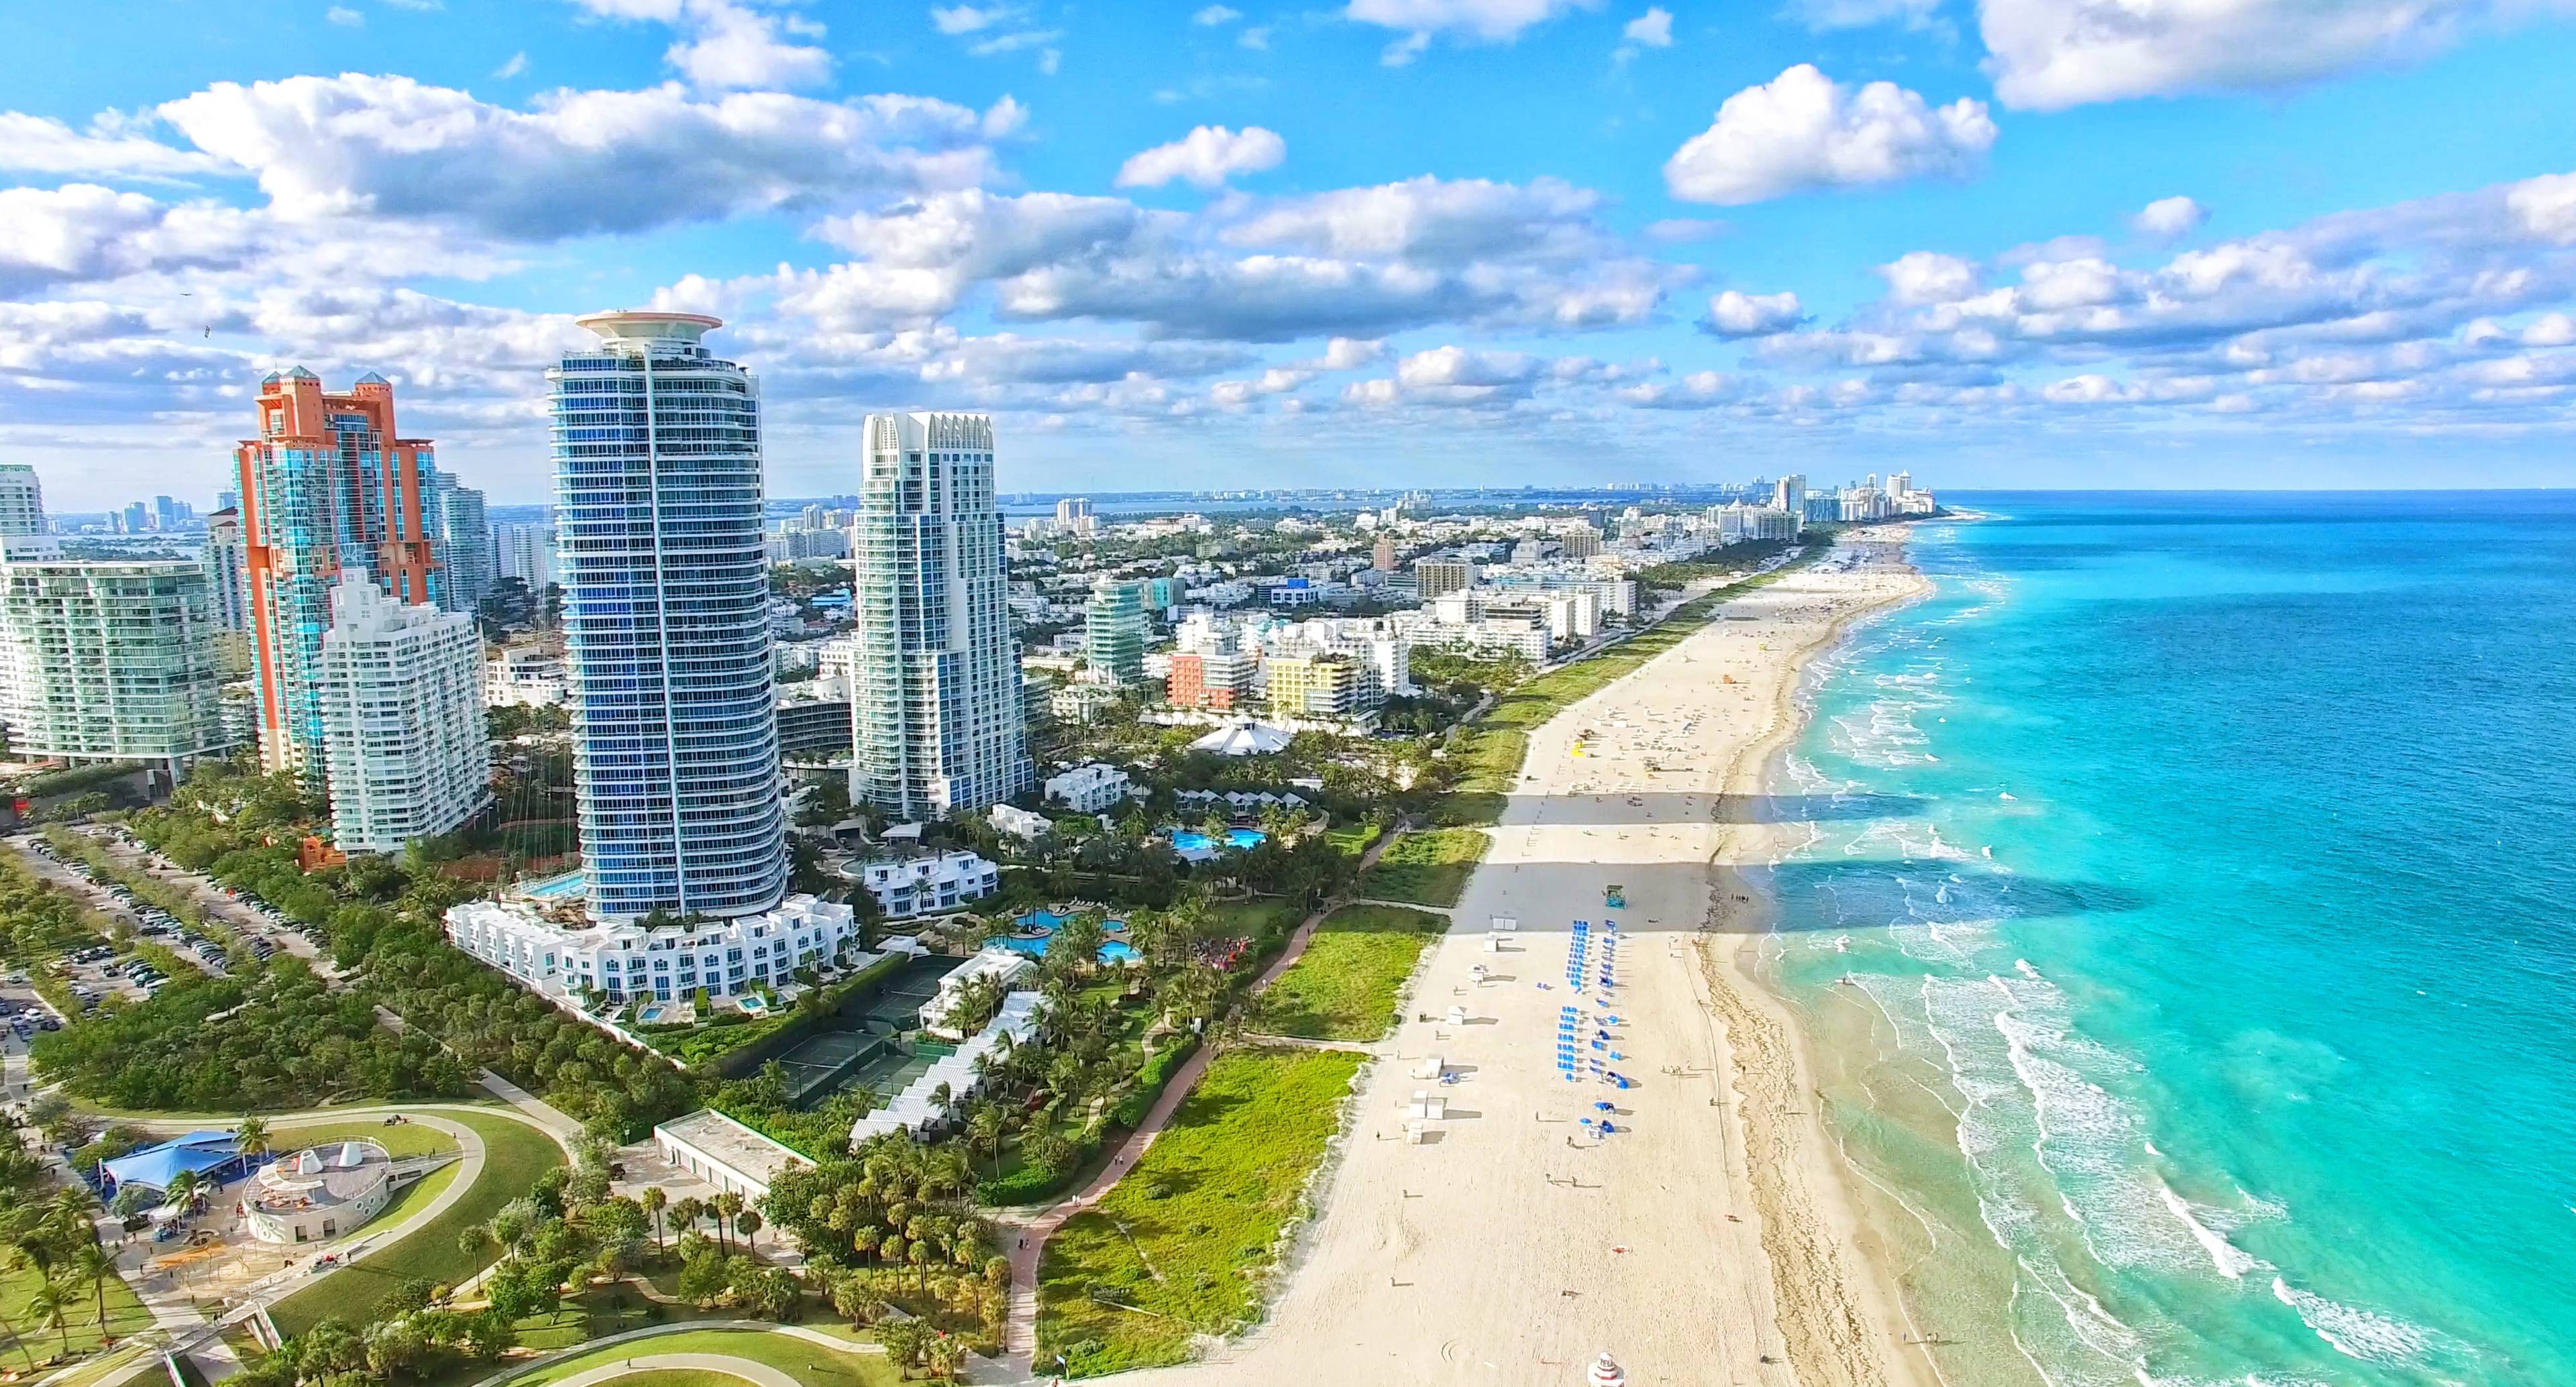 Florida’s Treasure Coast and the Colourful City of Miami